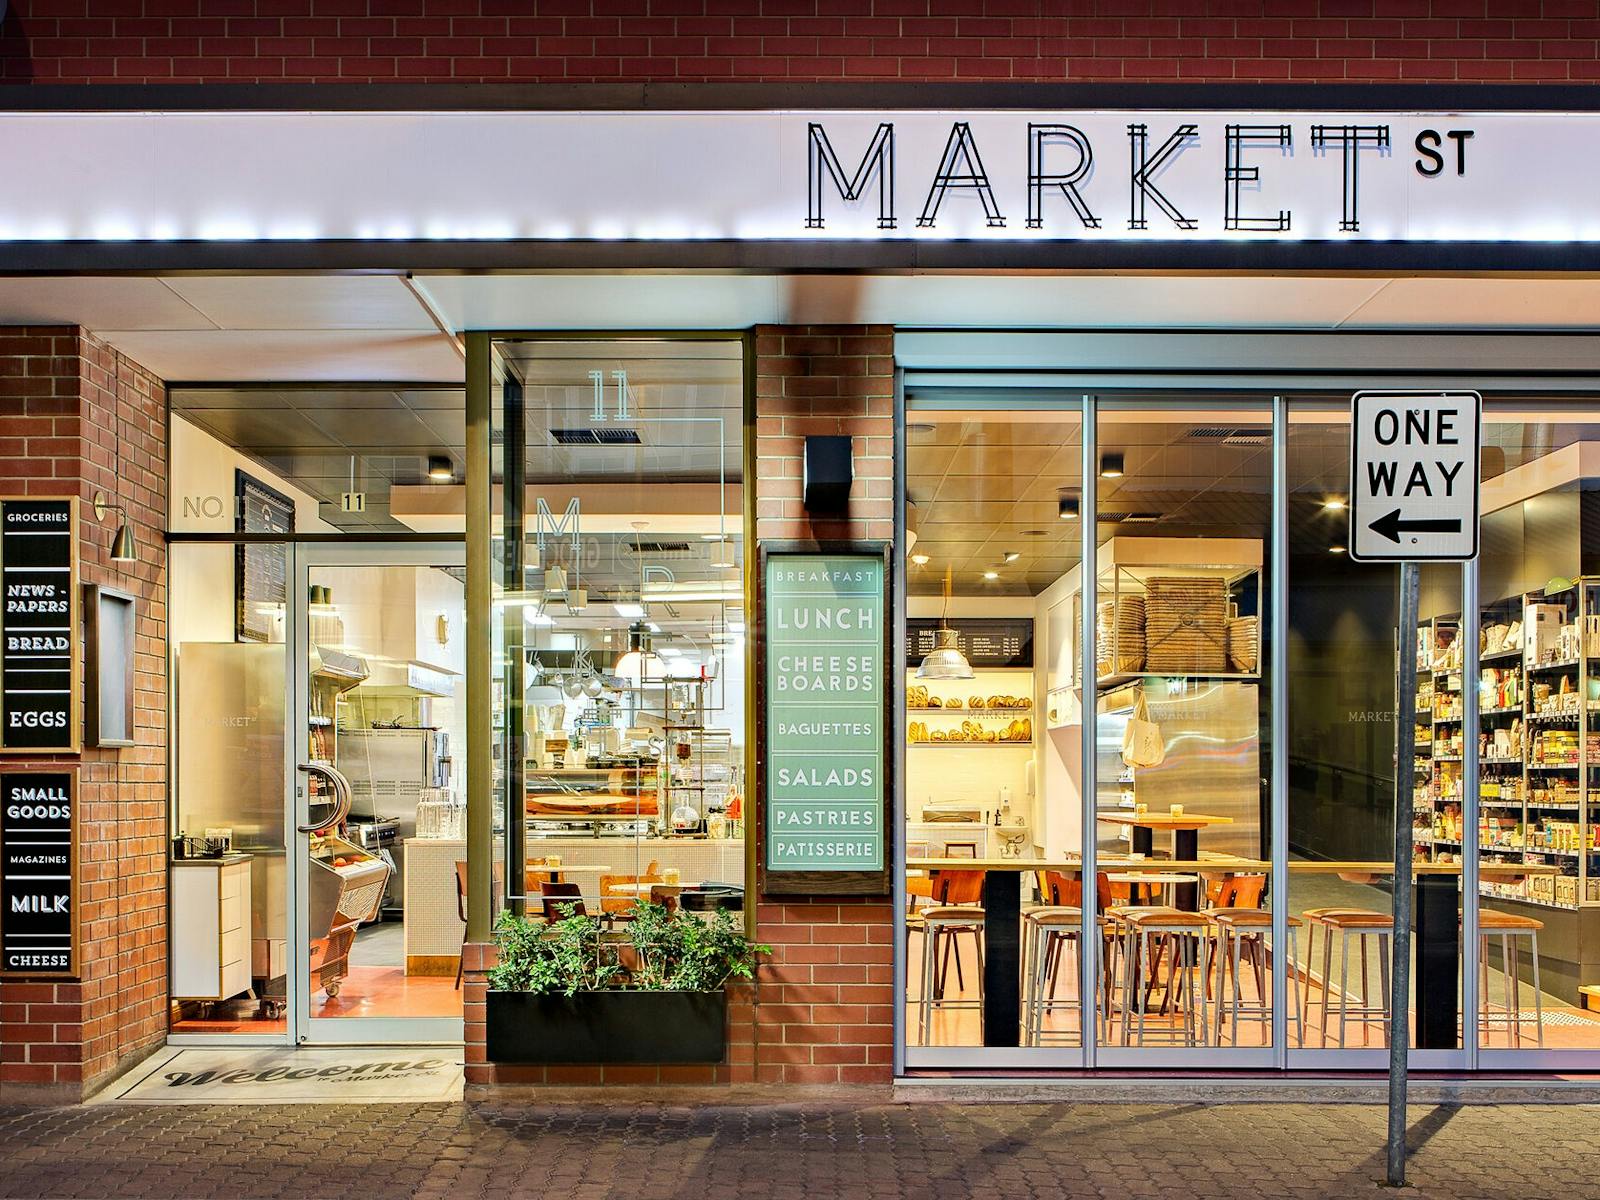 Market St Cafe Slider Image 1